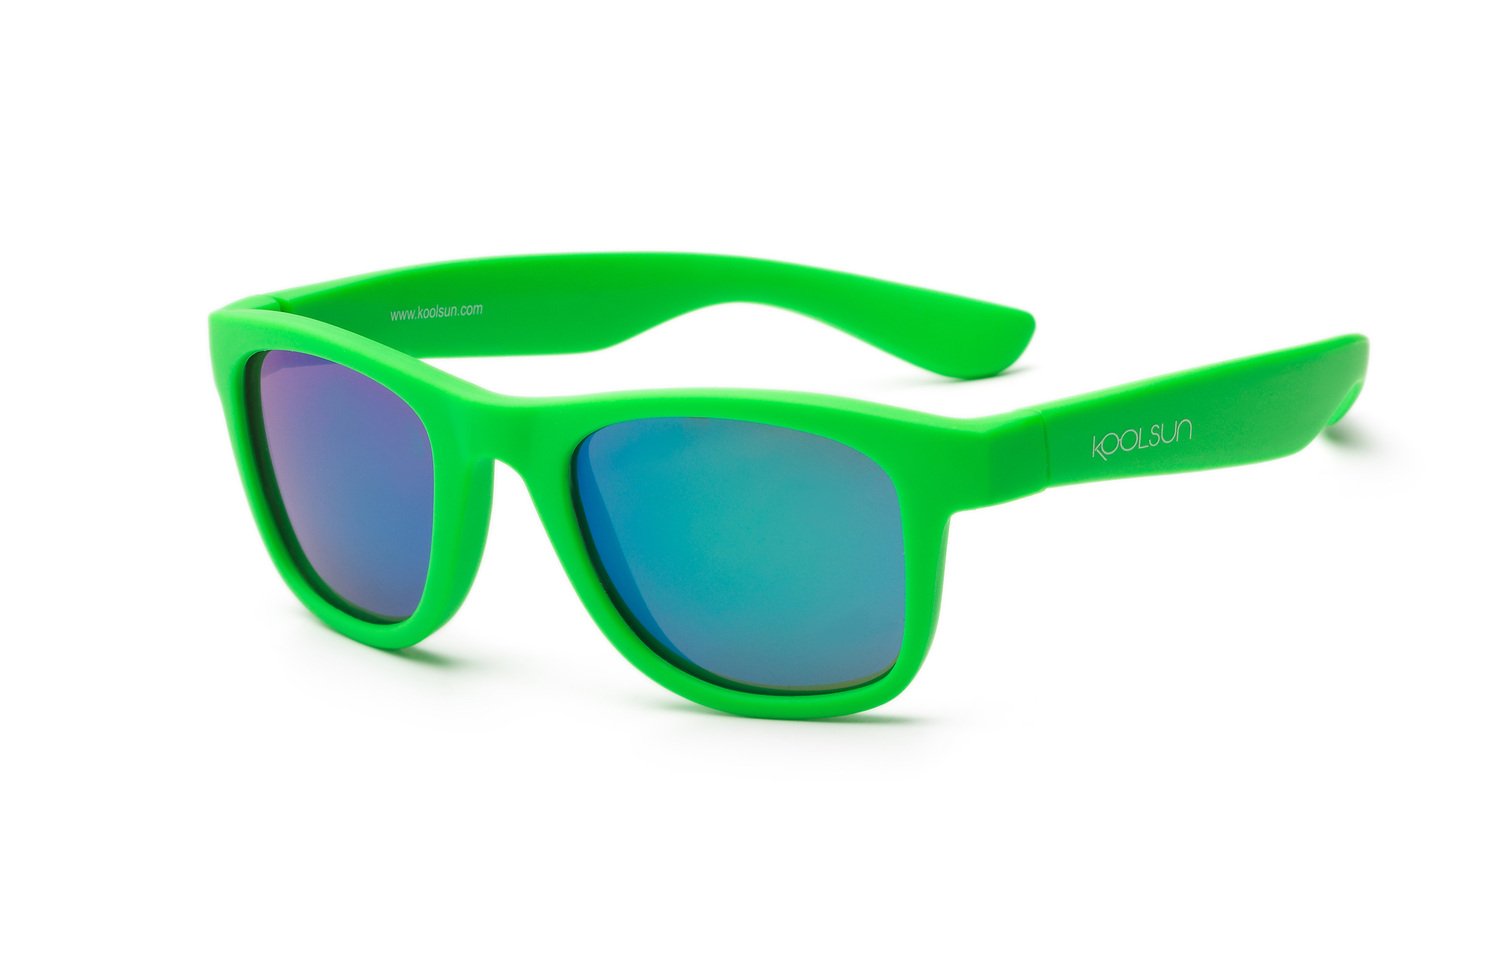 Детские солнцезащитные очки Koolsun Wawe неоново-зеленые (Размер 1+) (KS-WANG001) фото 